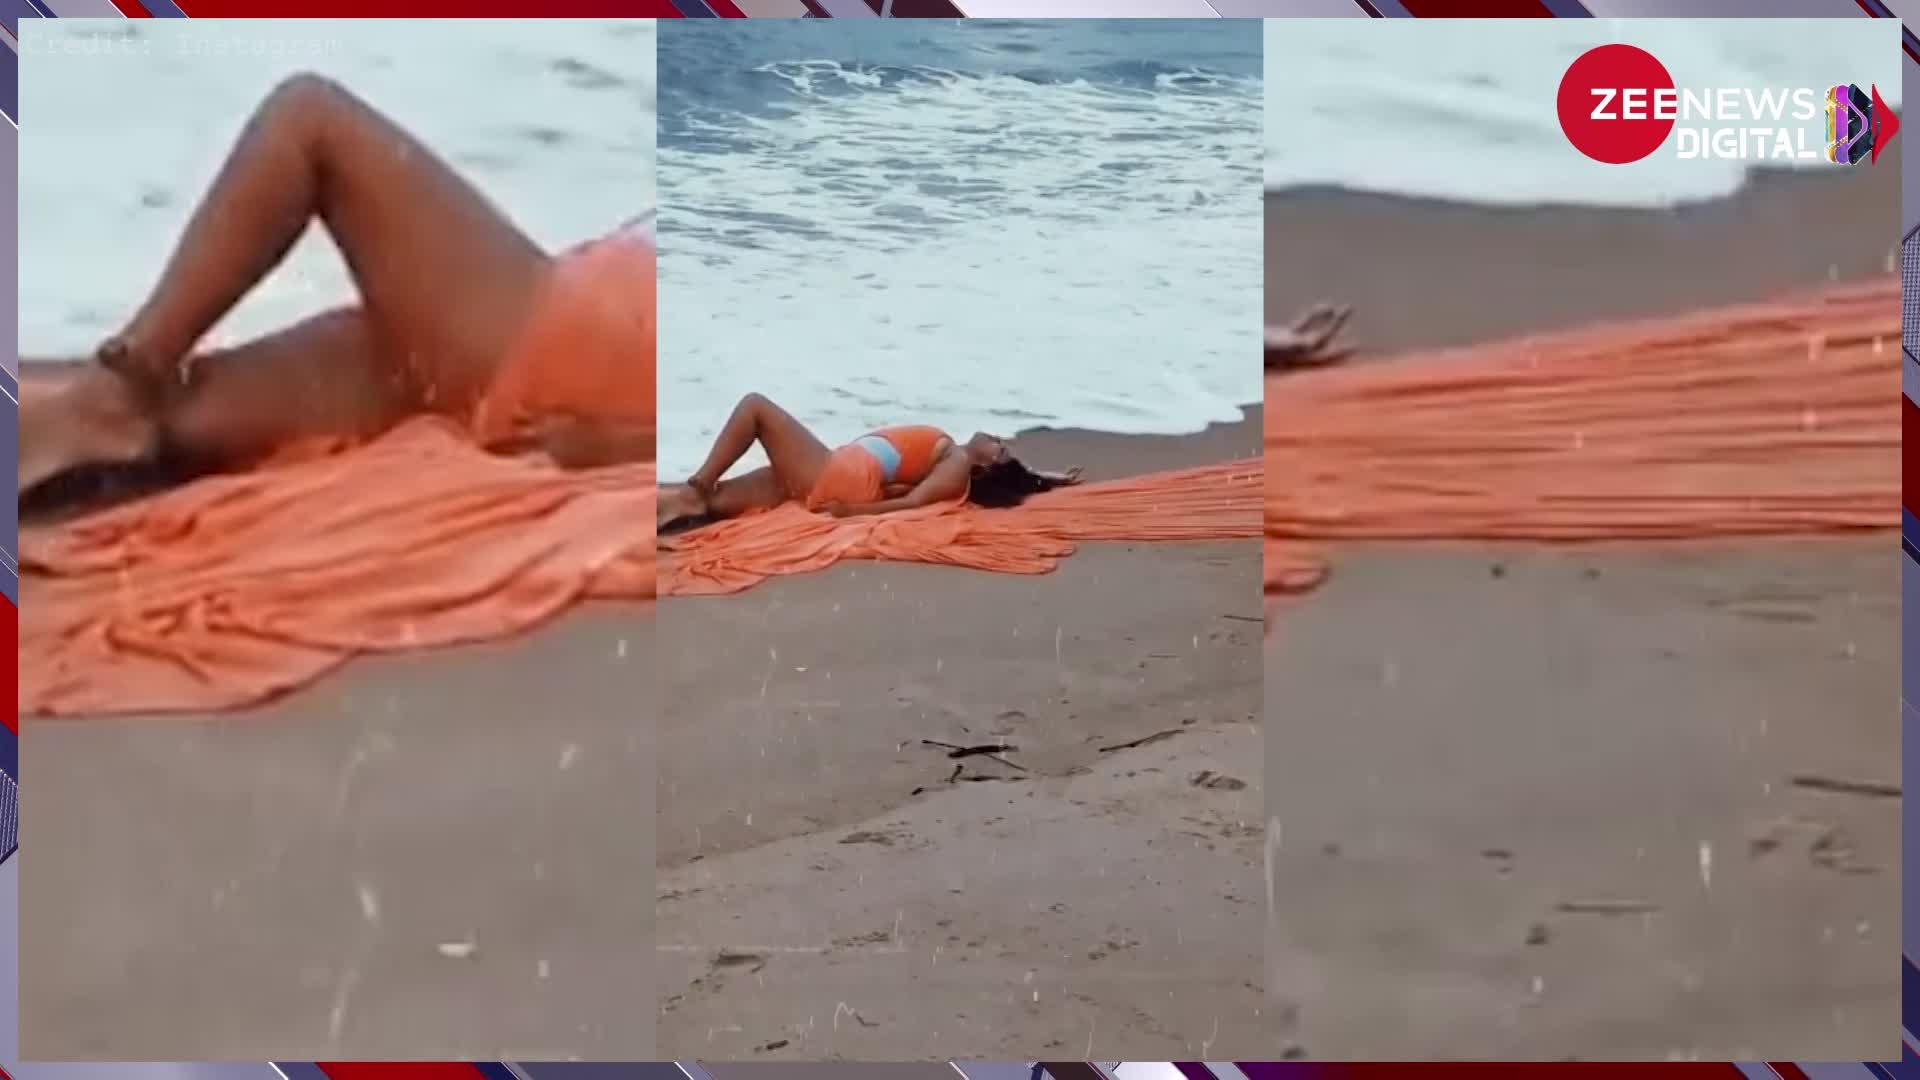 Sunny Leone Bold Photoshoot: ऑरेंज बिकिनी पहन समंदर की लहरों में भीगी सन्नी लियोन, बोल्ड अदाओं से फैंस को किया मदहोश